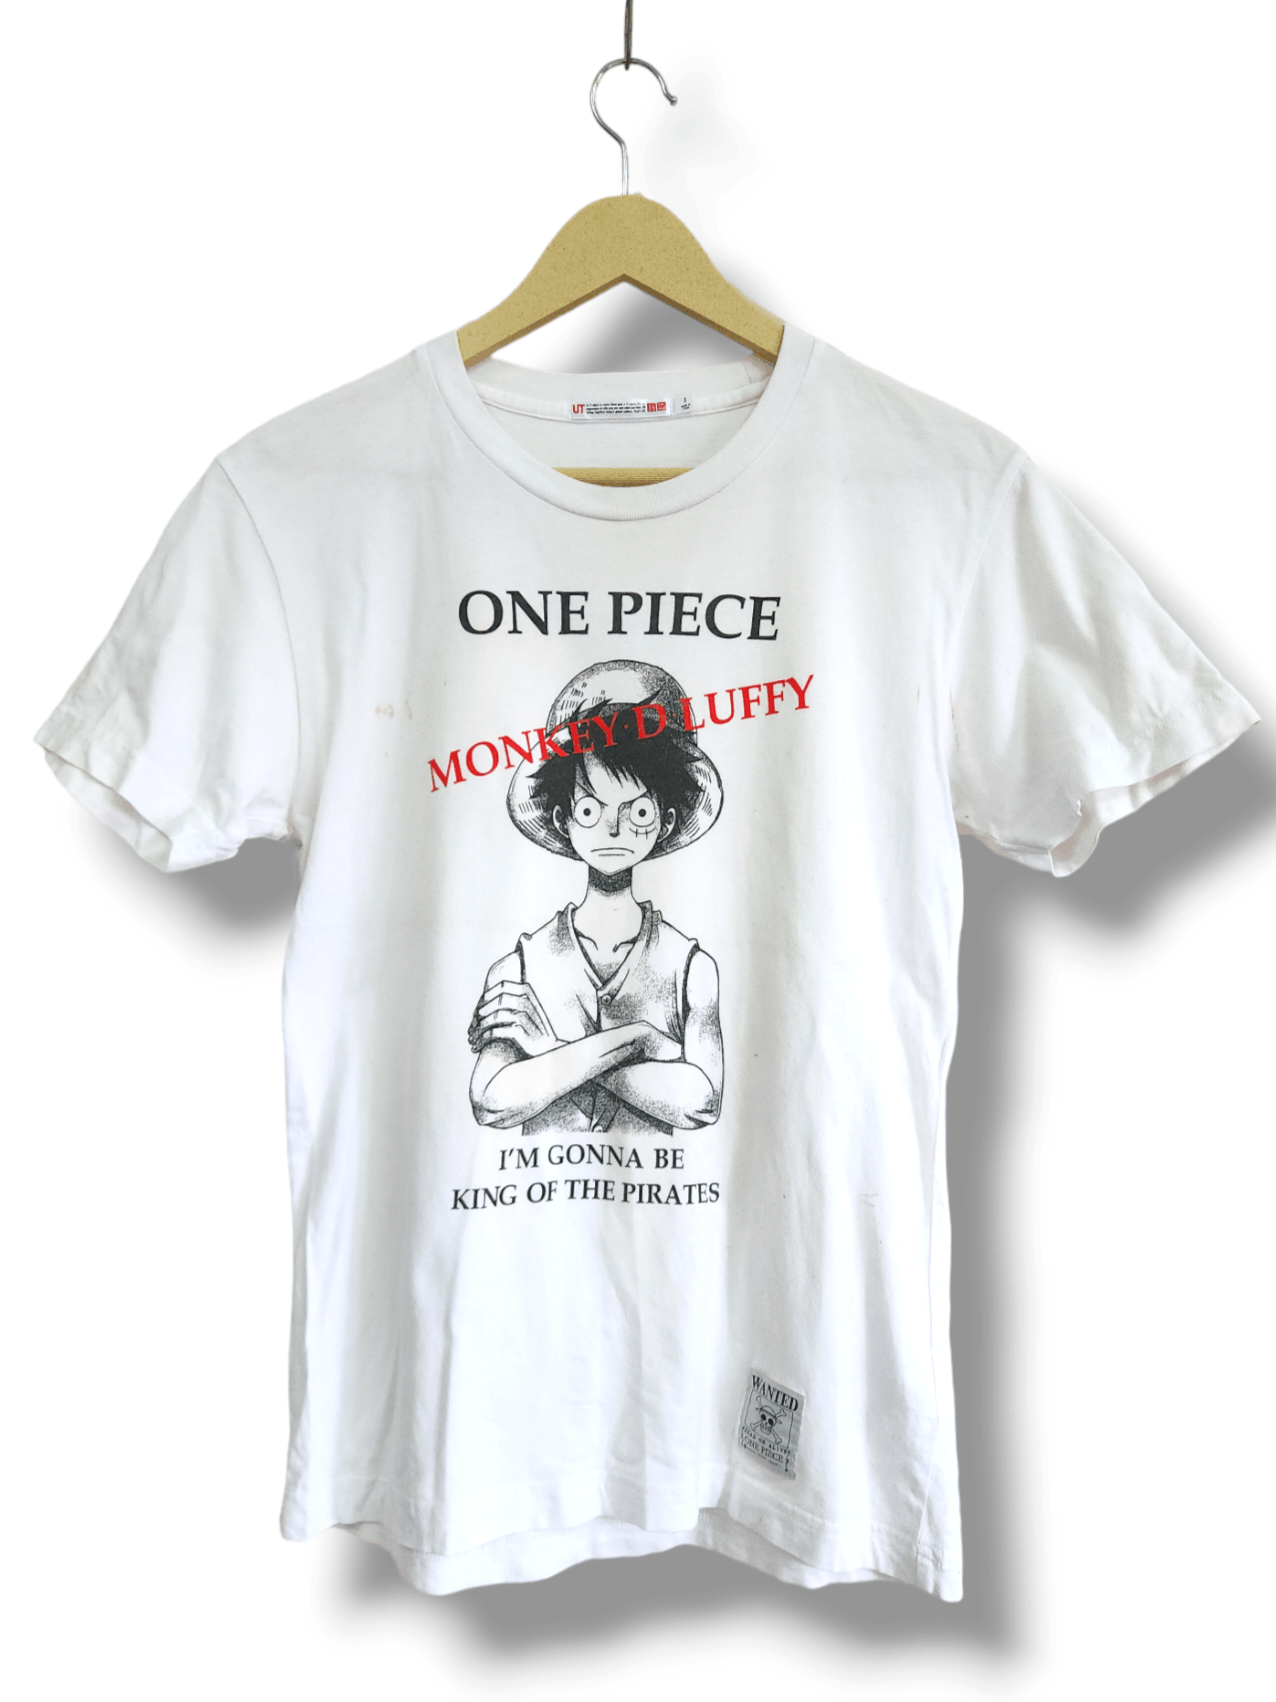 Uniqlo - One Piece Monkey D Luffy Big Printed TShirt - 1